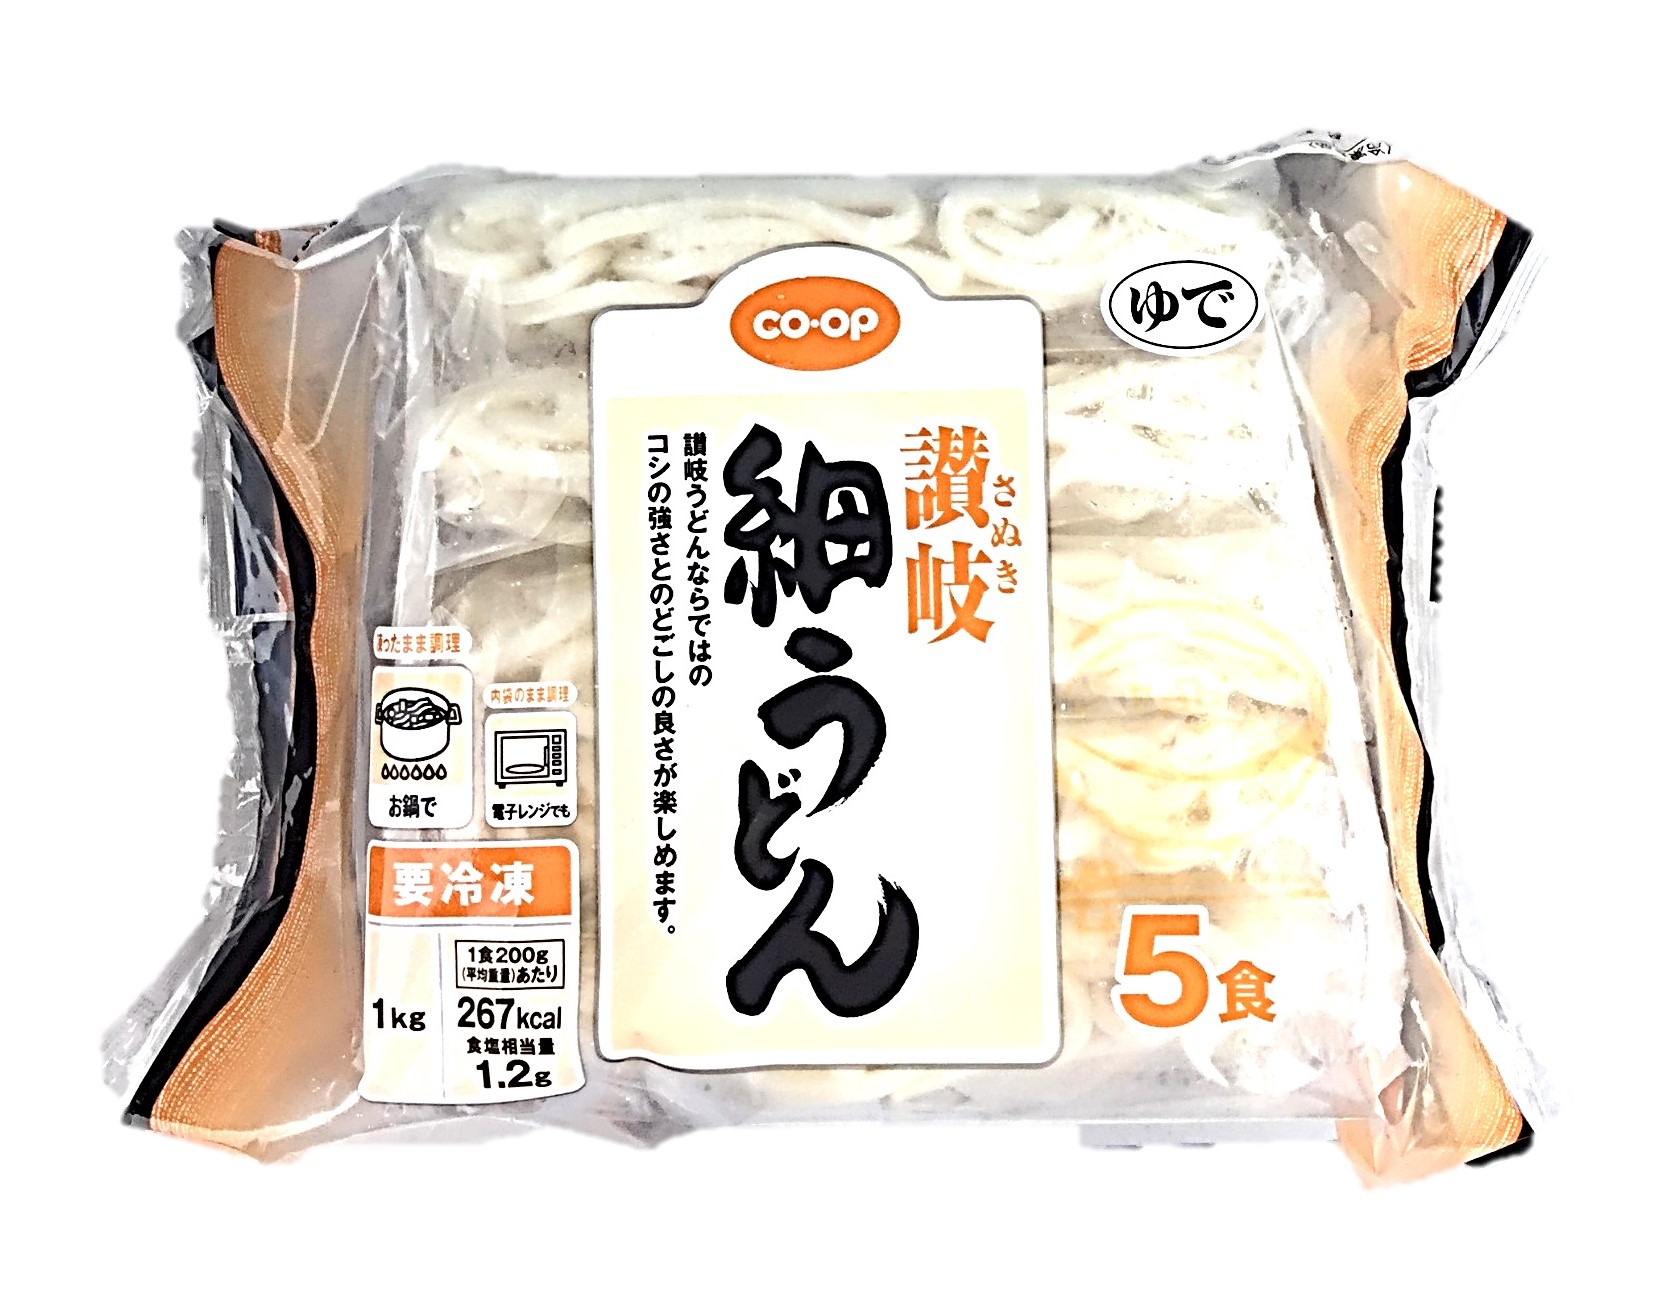 讃岐細うどん5食(1kg) コープ